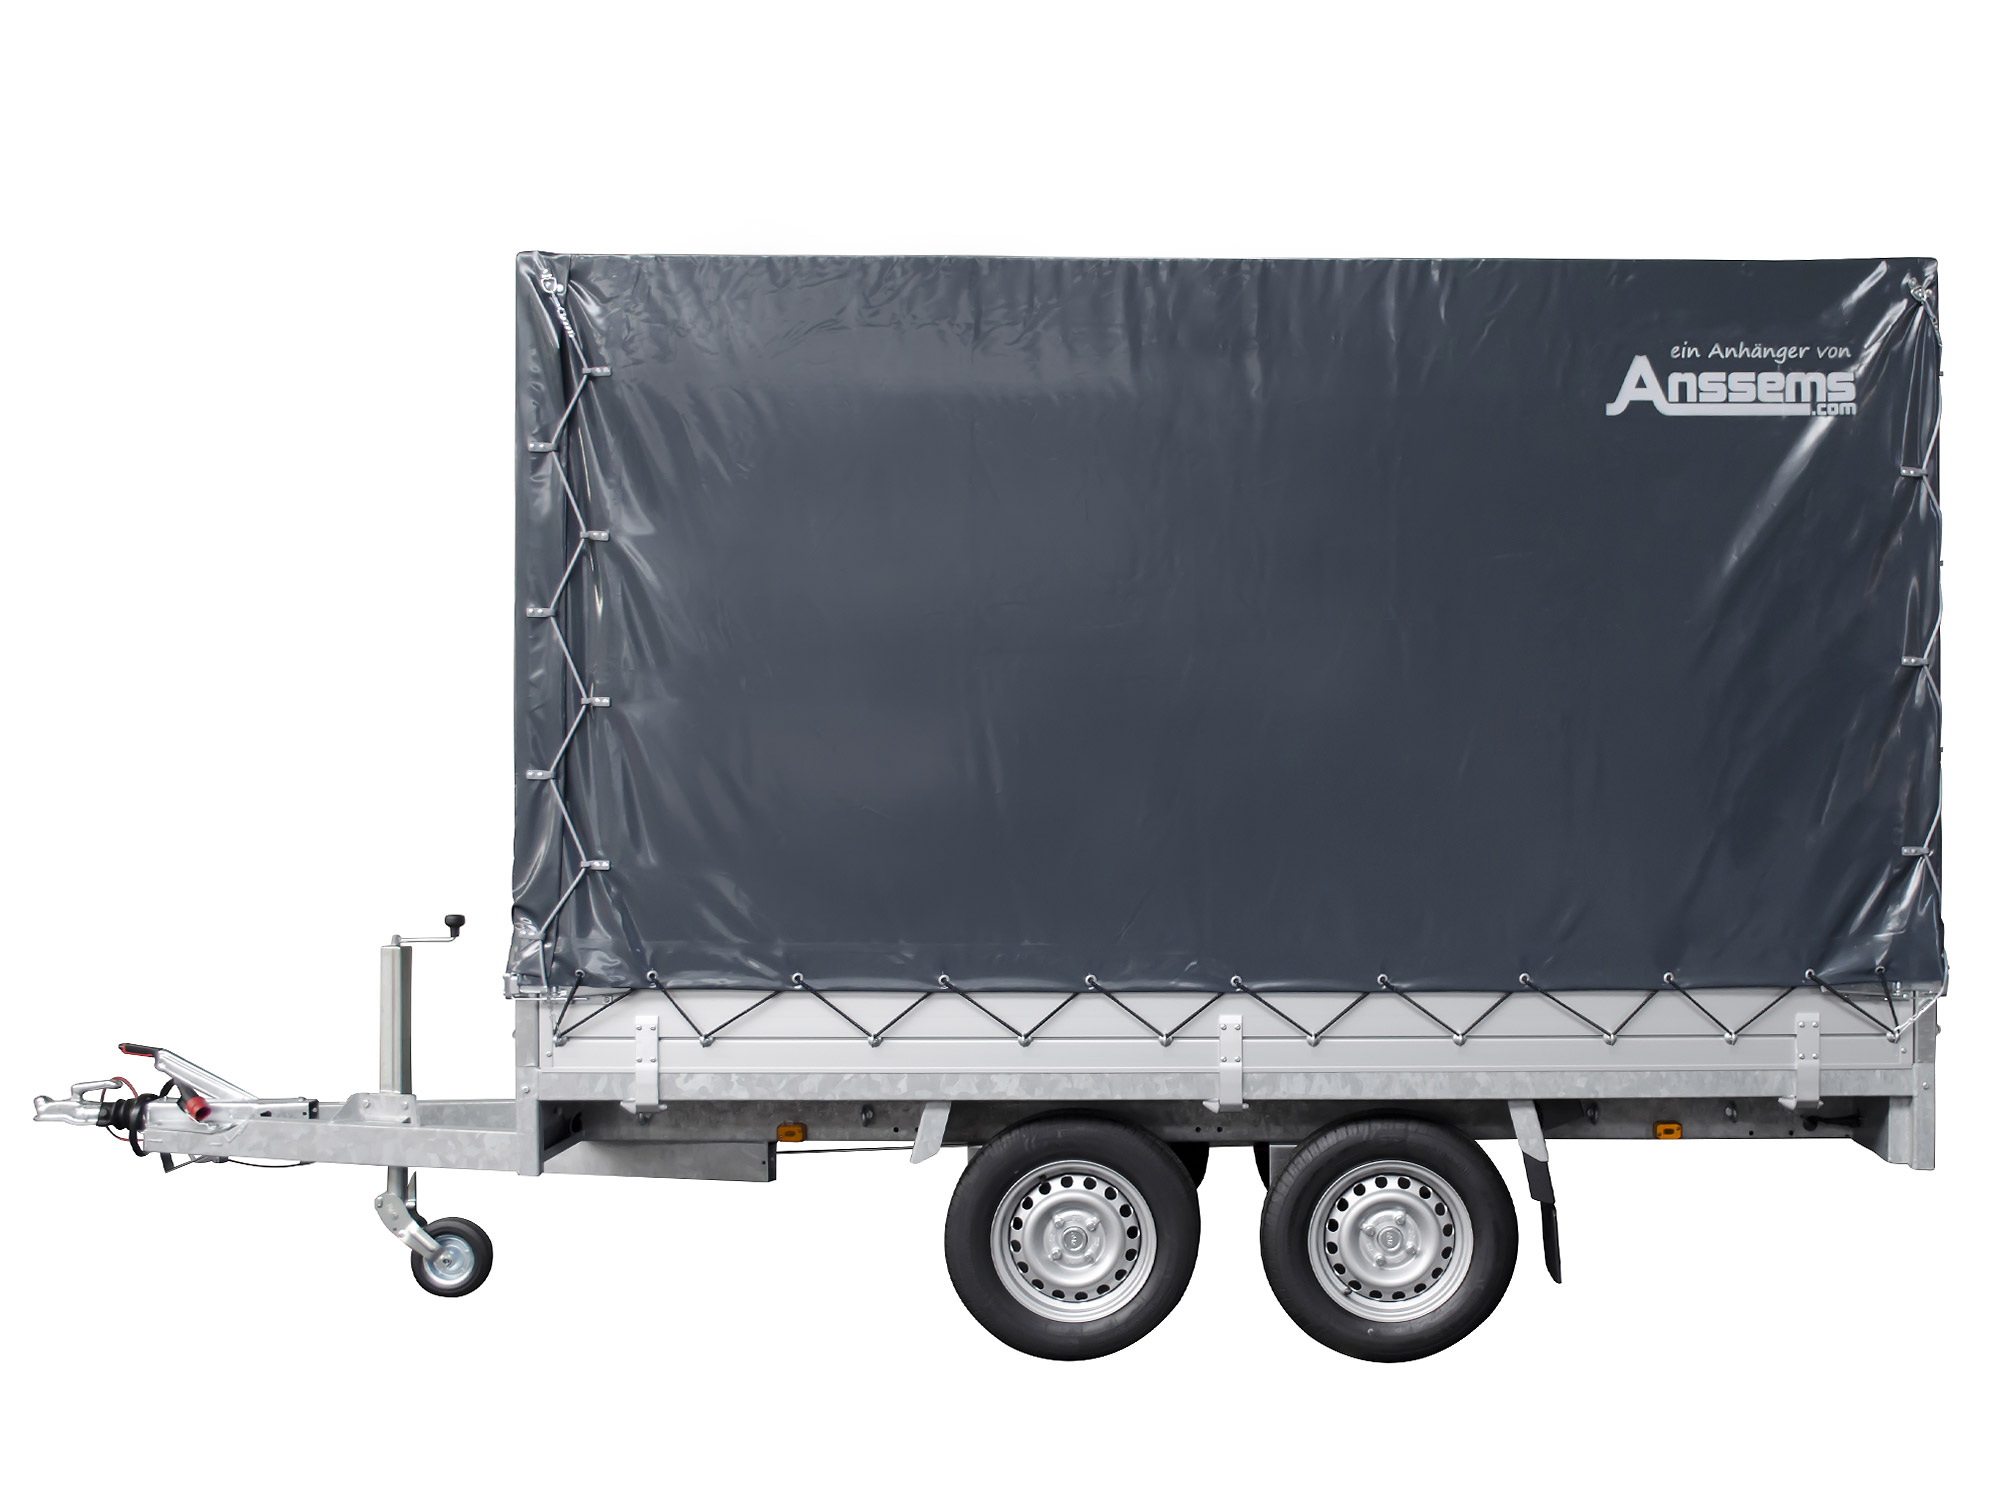 Anssems PKW Anhänger Hochlader Alu 3000 kg, Ladefläche 3,25 x 1,78 m mit Aktionsplane 1,80m